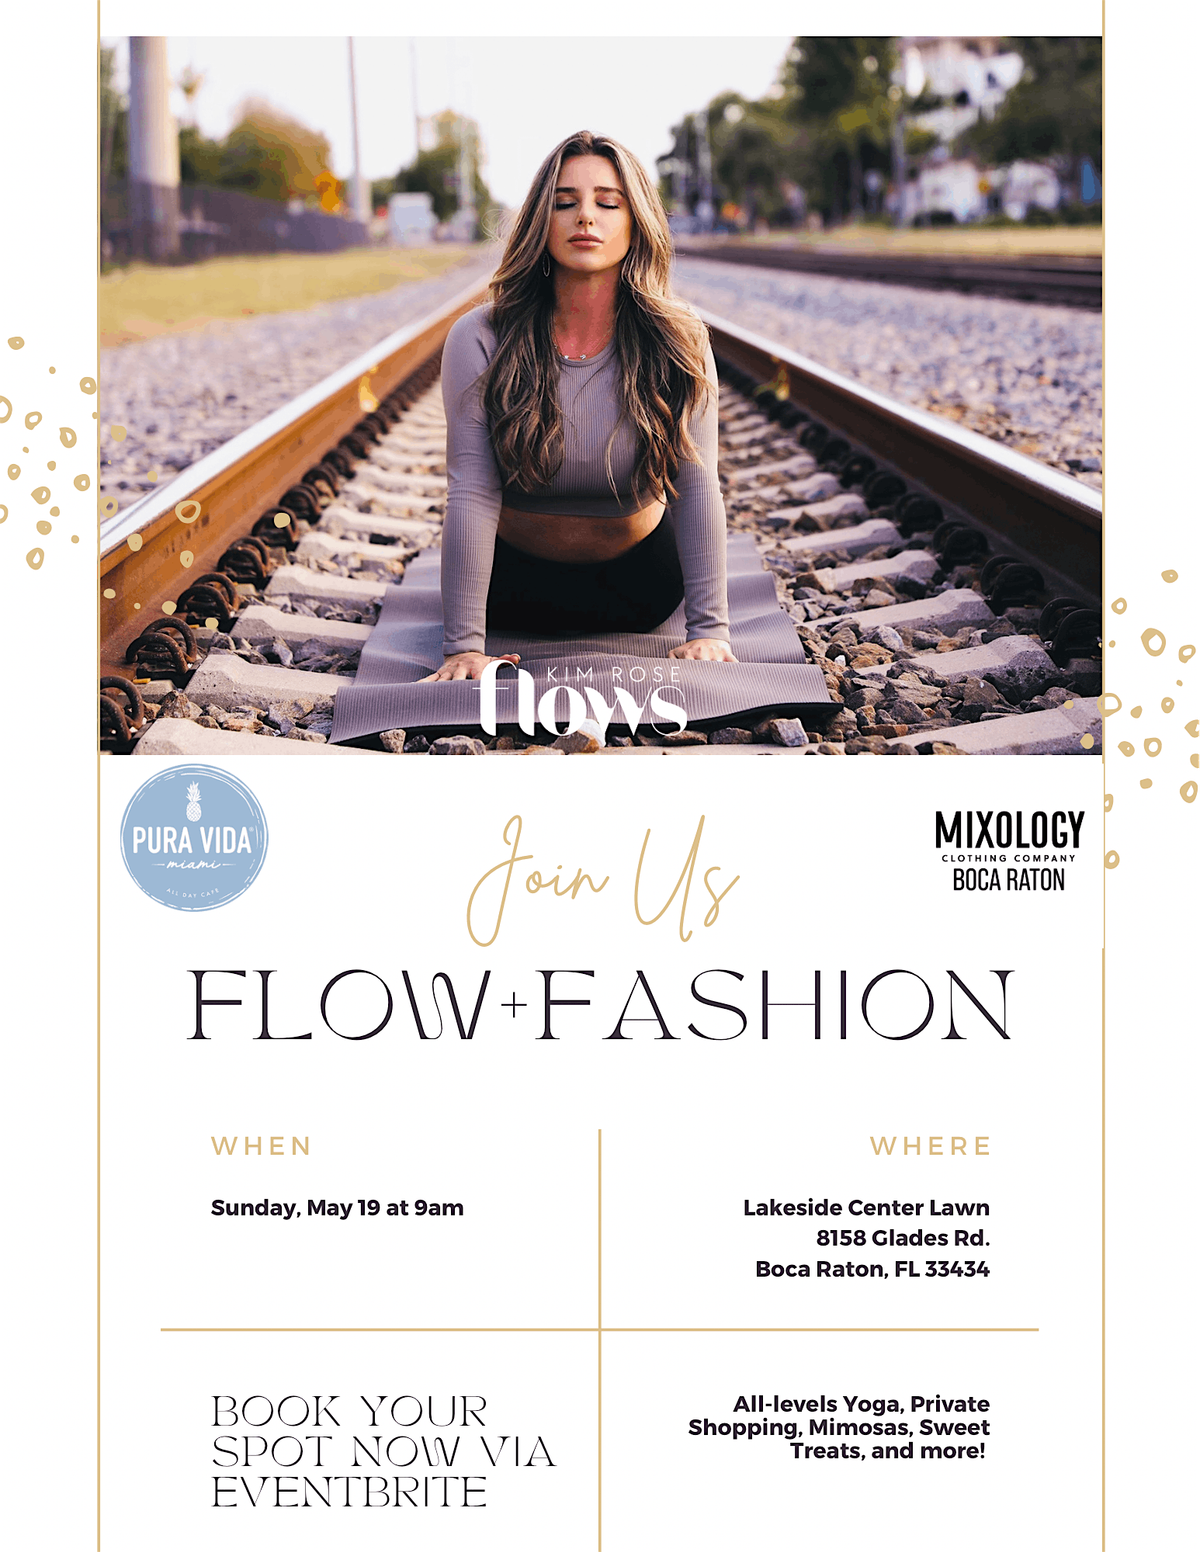 FLOW + FASHION with Kim Rose Flows Yoga + Mixology